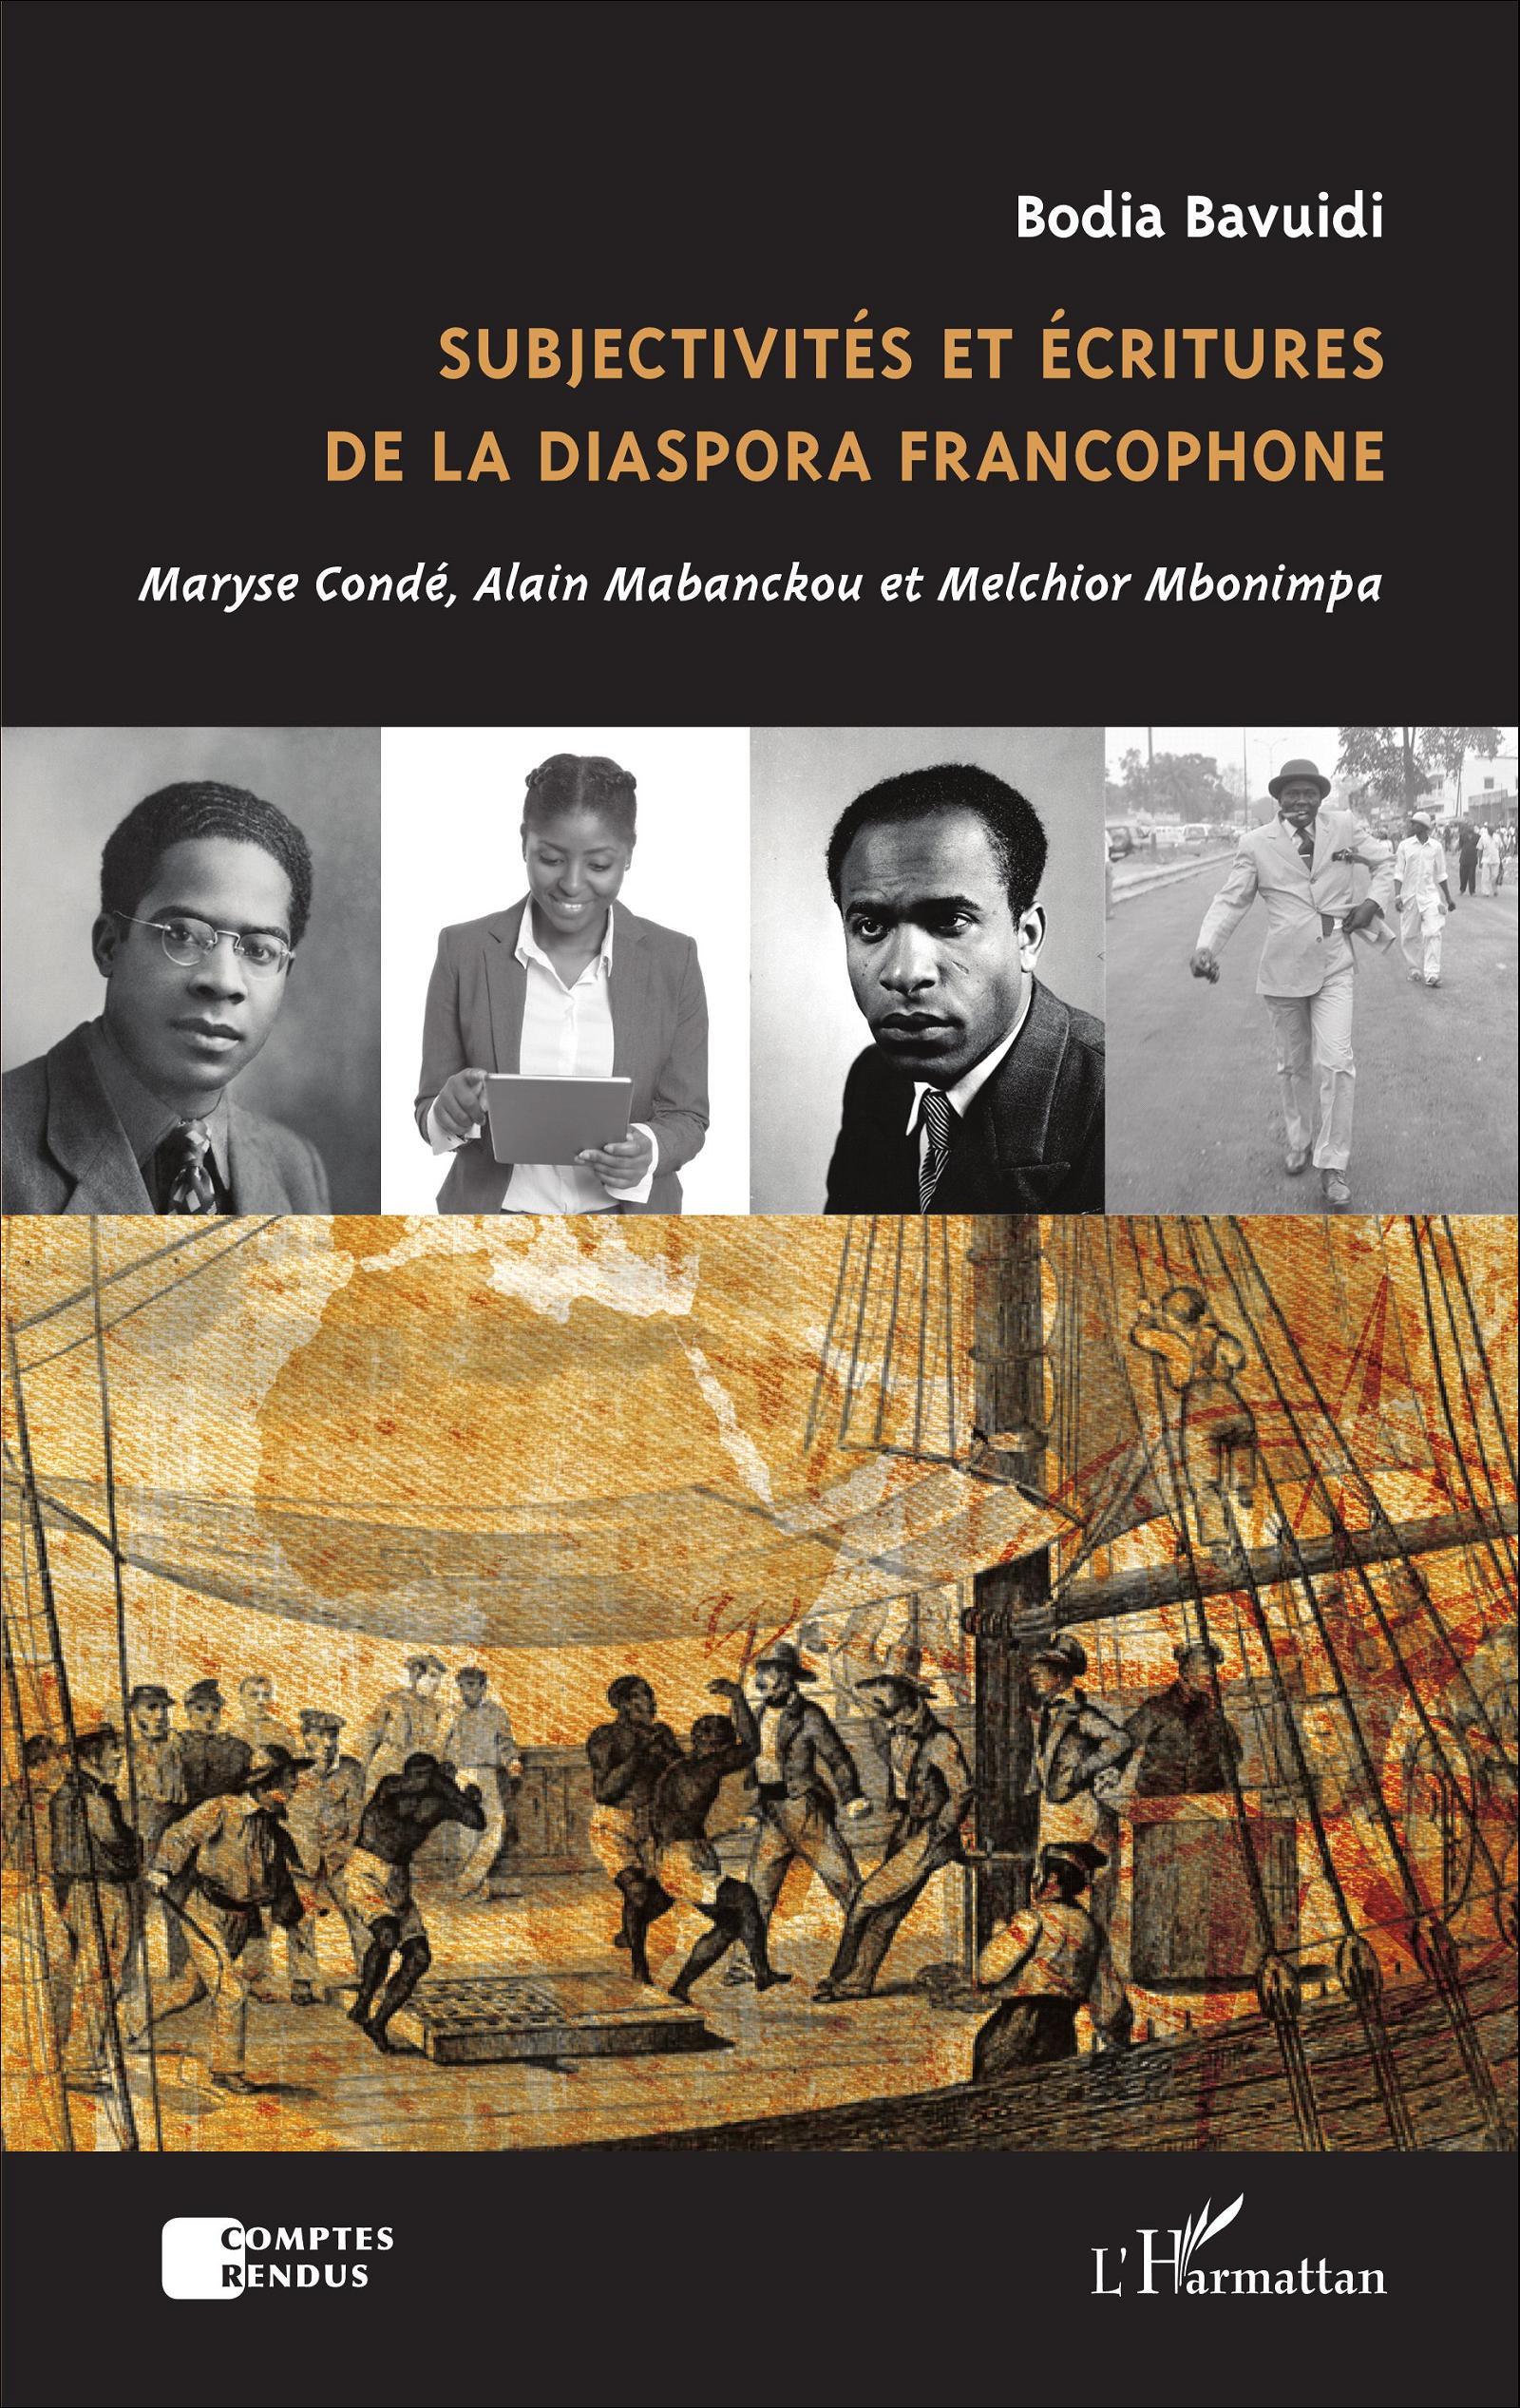 B. Bavuidi, Subjectivités et écritures de la diaspora francophone - Maryse Condé, Alain Mabanckou et Melchior Mbonimpa